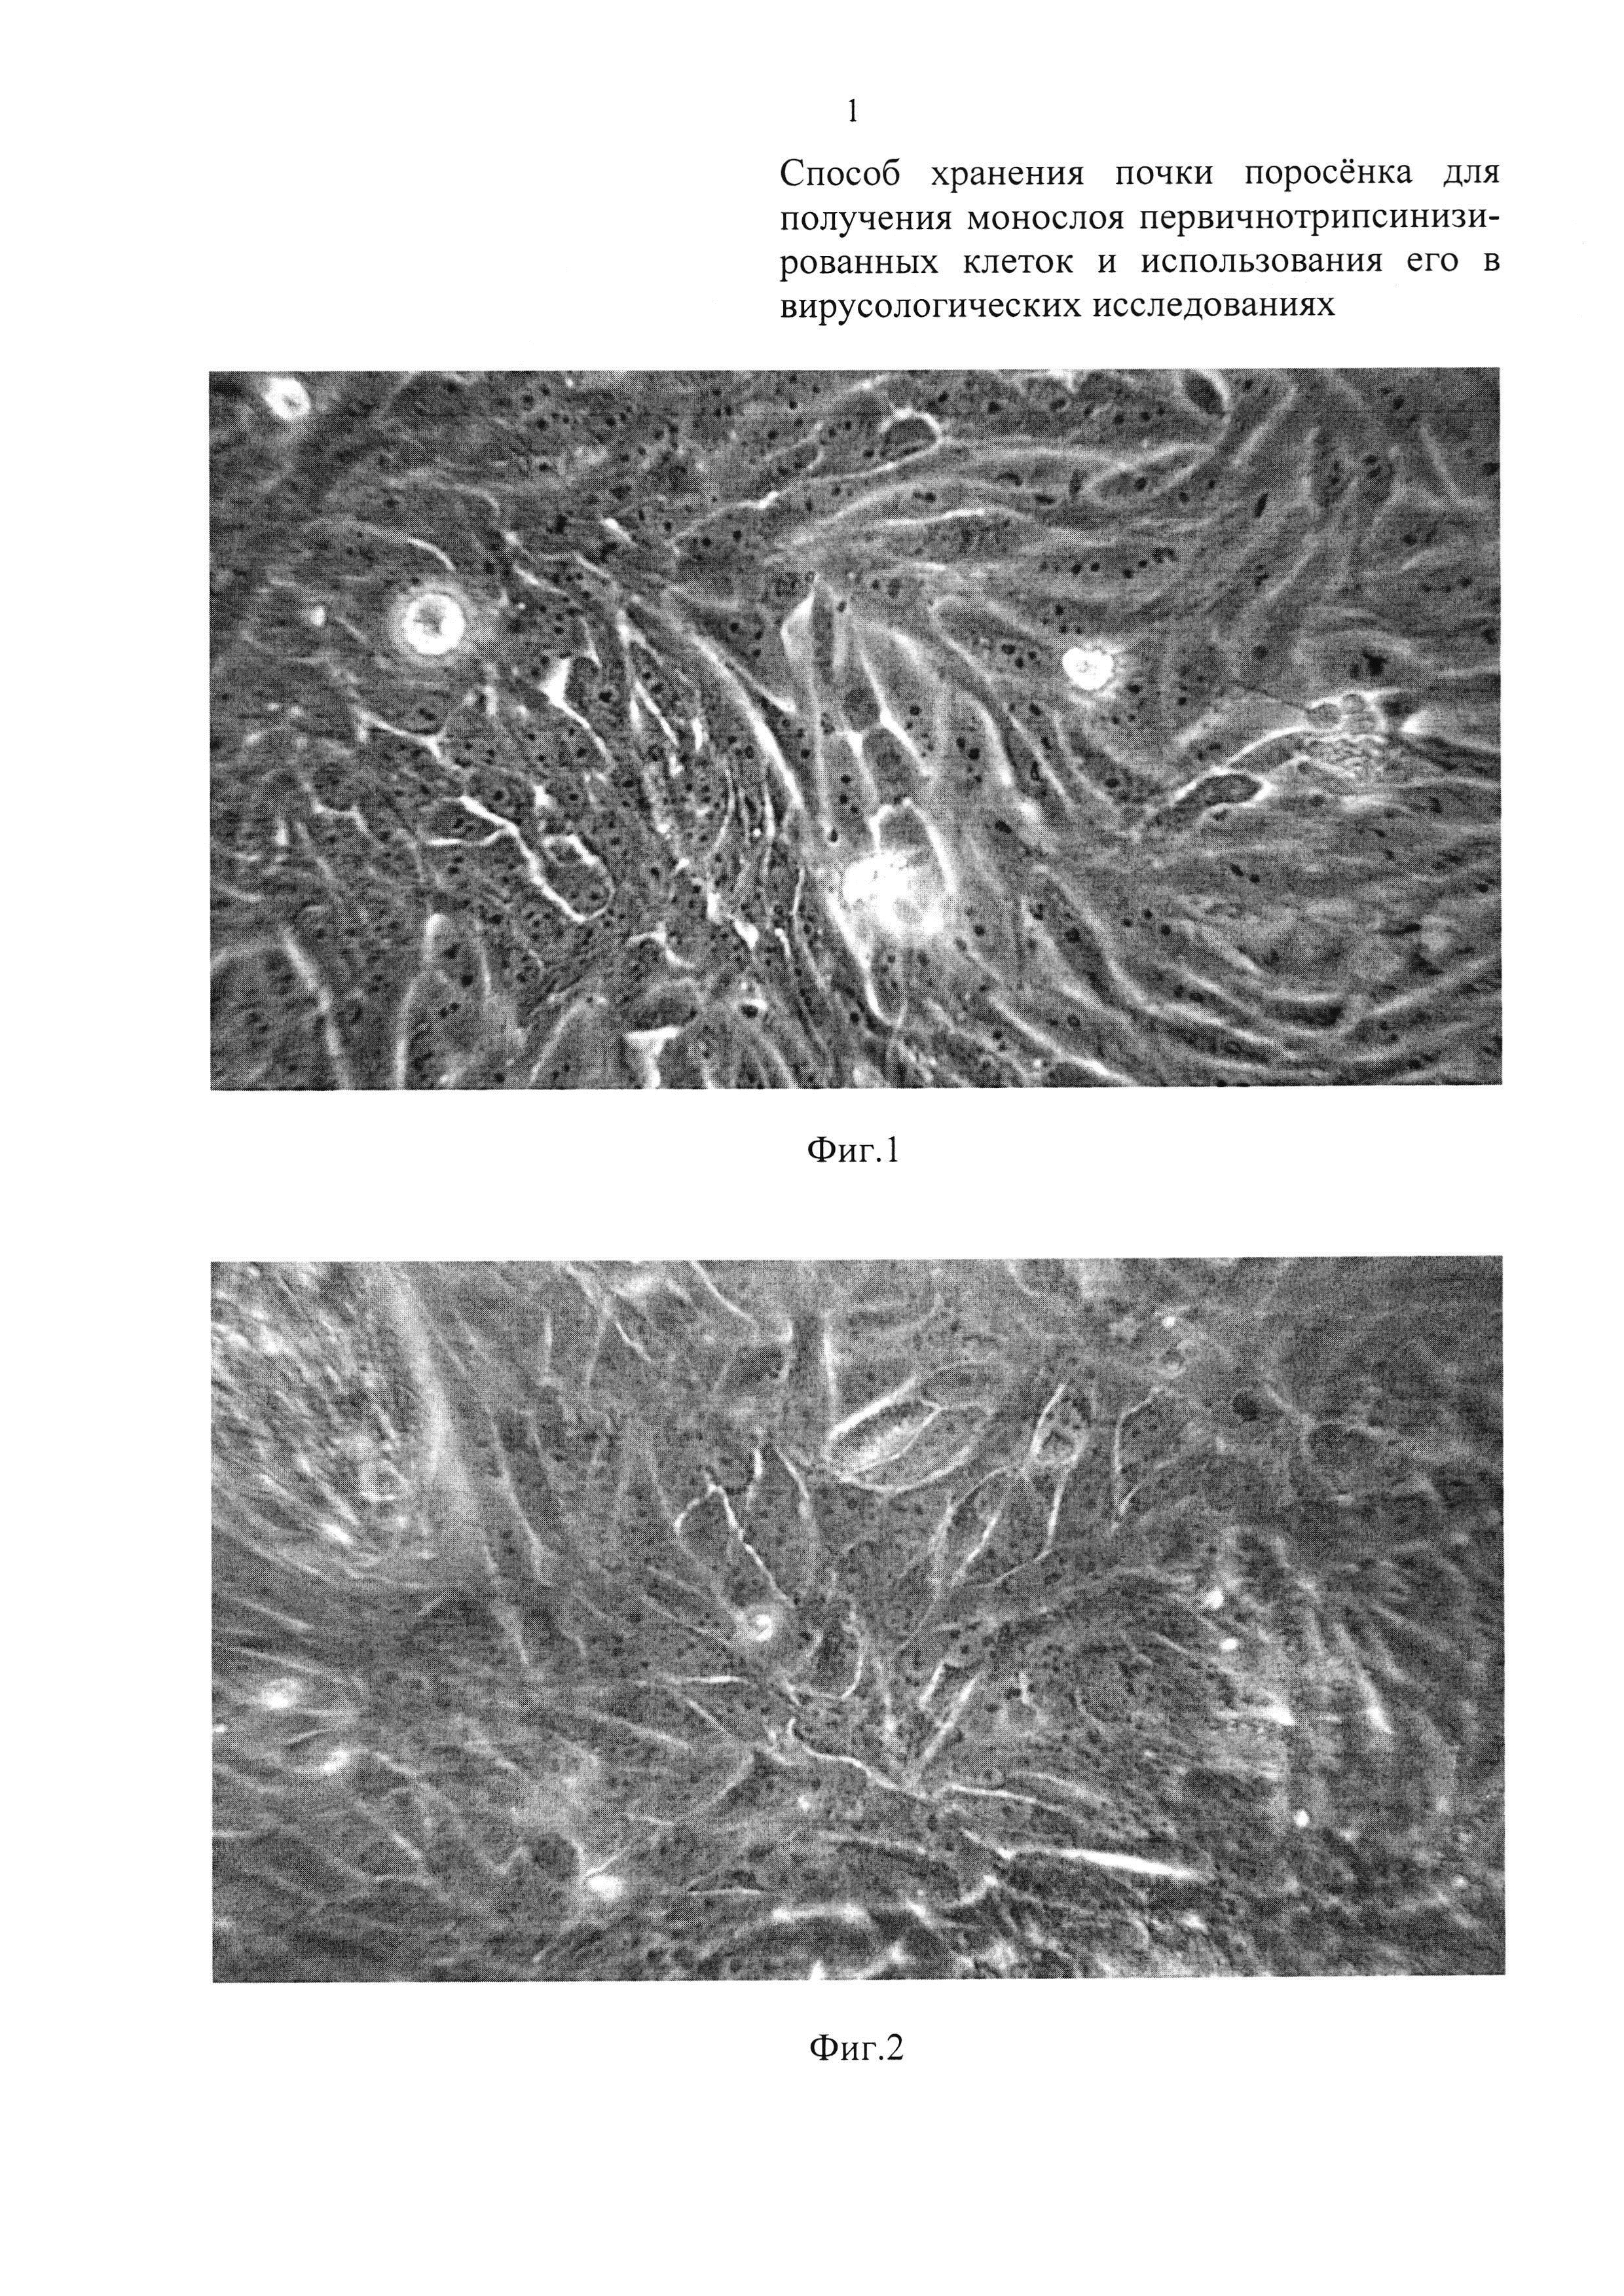 Способ хранения почки поросенка для получения монослоя первичнотрипсинизированных клеток и использования его в вирусологических исследованиях